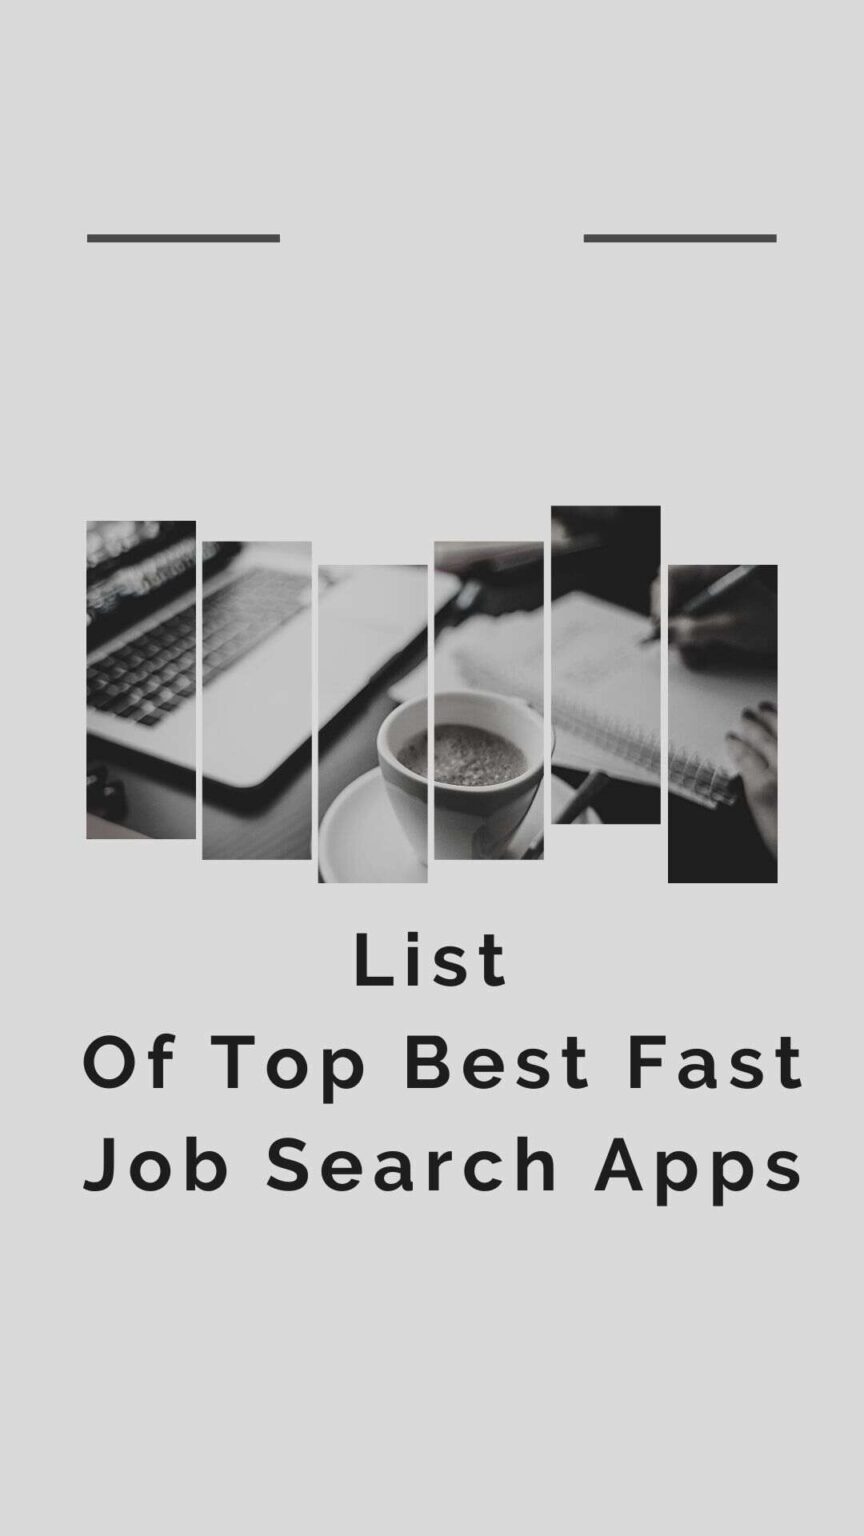 Fast job searchers apps